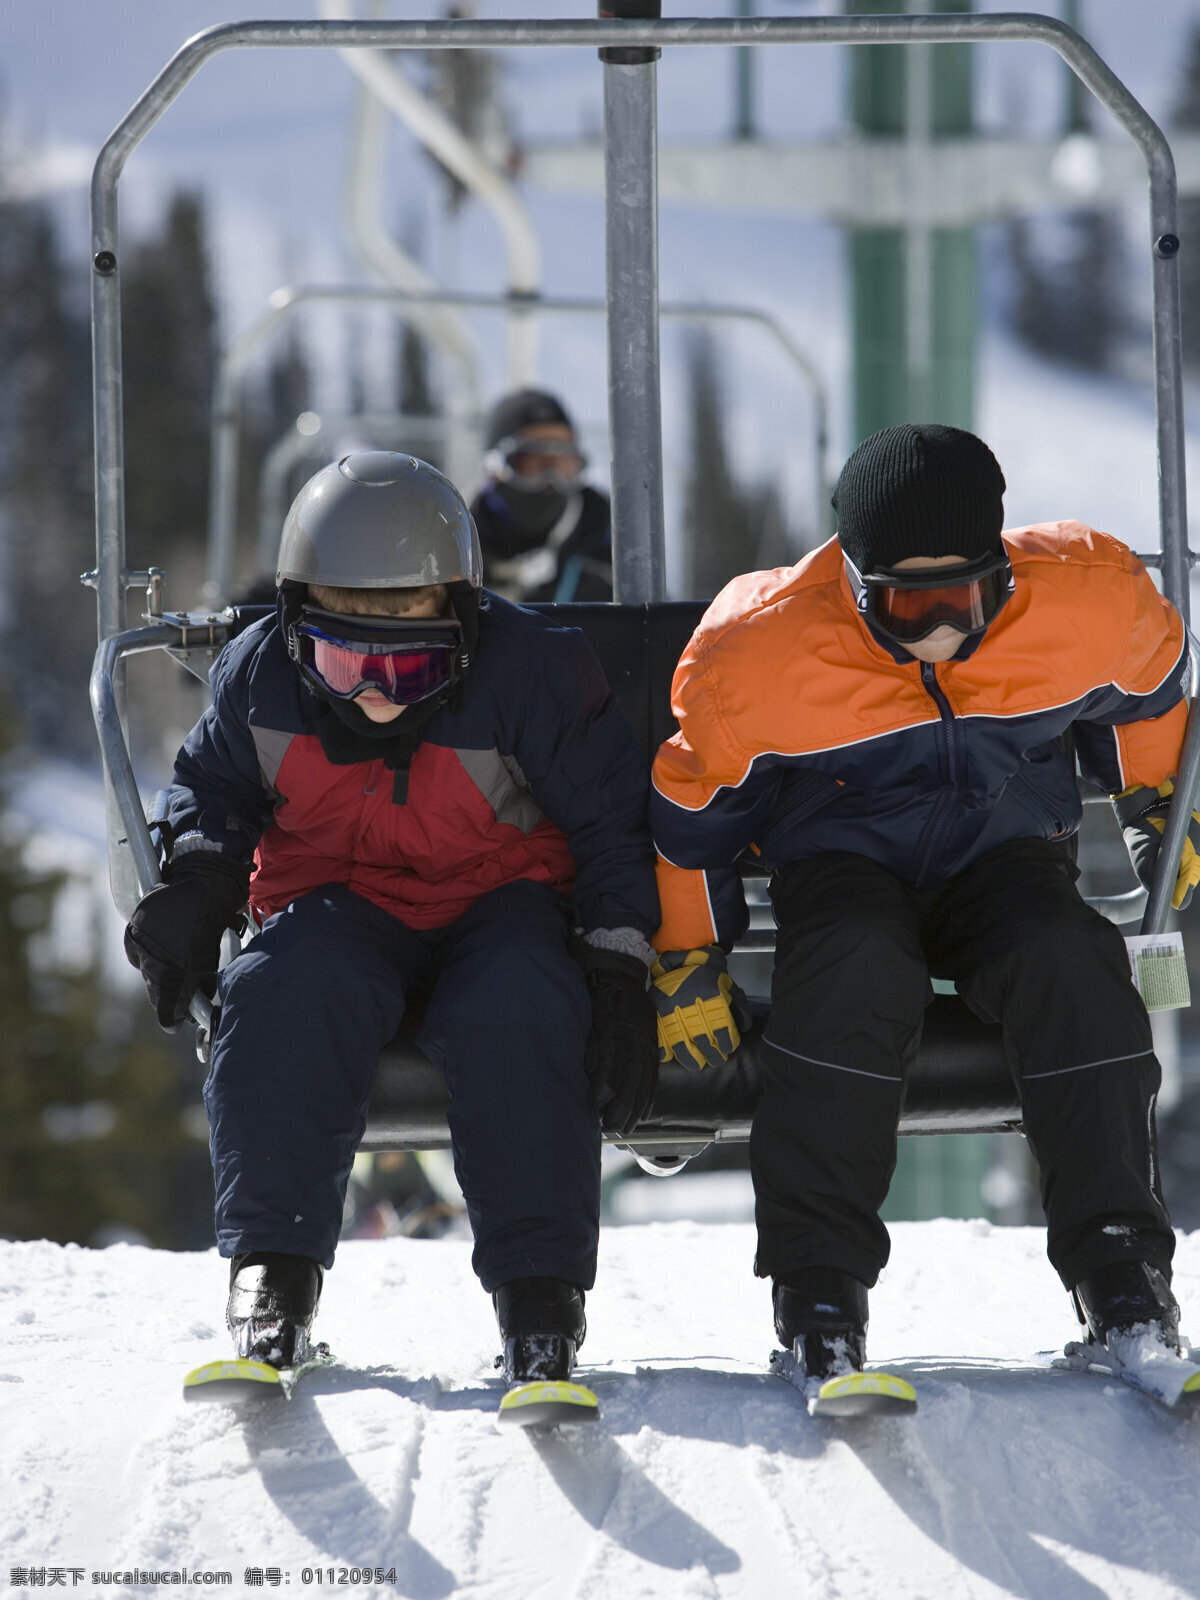 坐在 滑雪 车上 夫妻 滑雪场 滑雪运动 滑雪服 滑雪工具 滑雪图片 生活百科